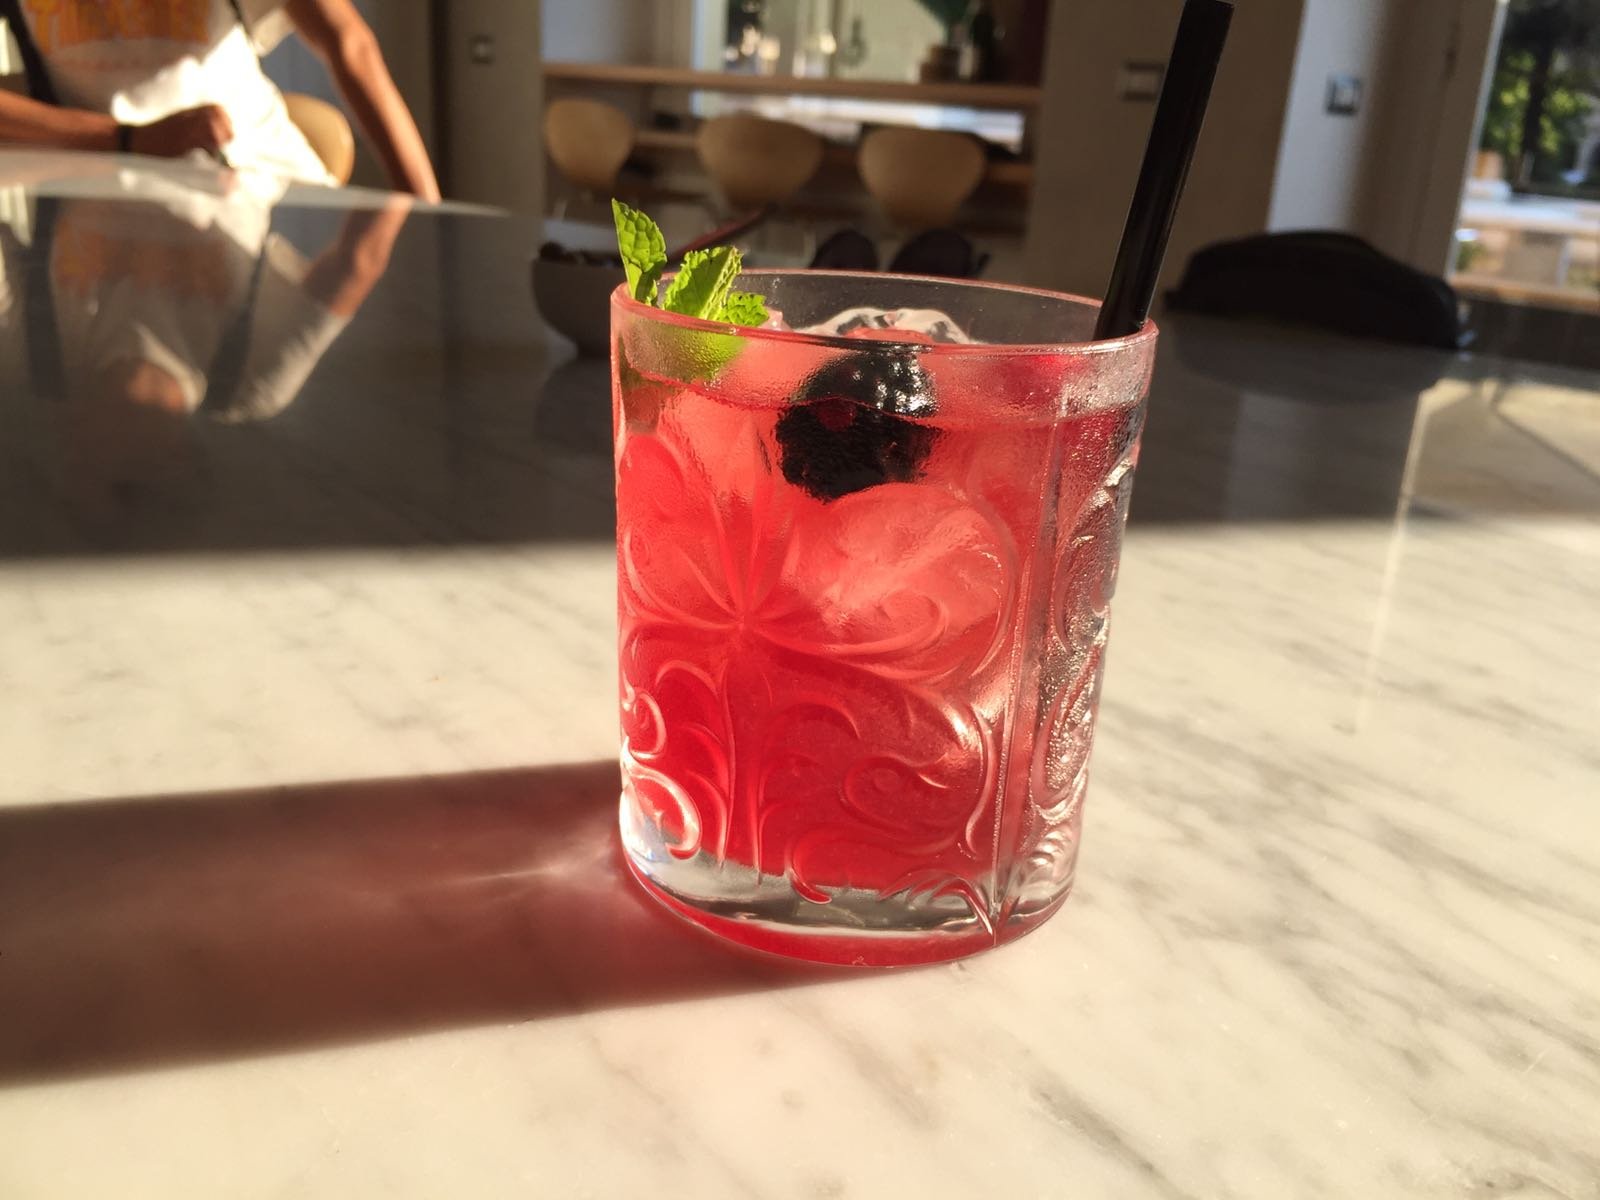 Sfida per il cocktail “Donna è” alla “Notte in rosé”